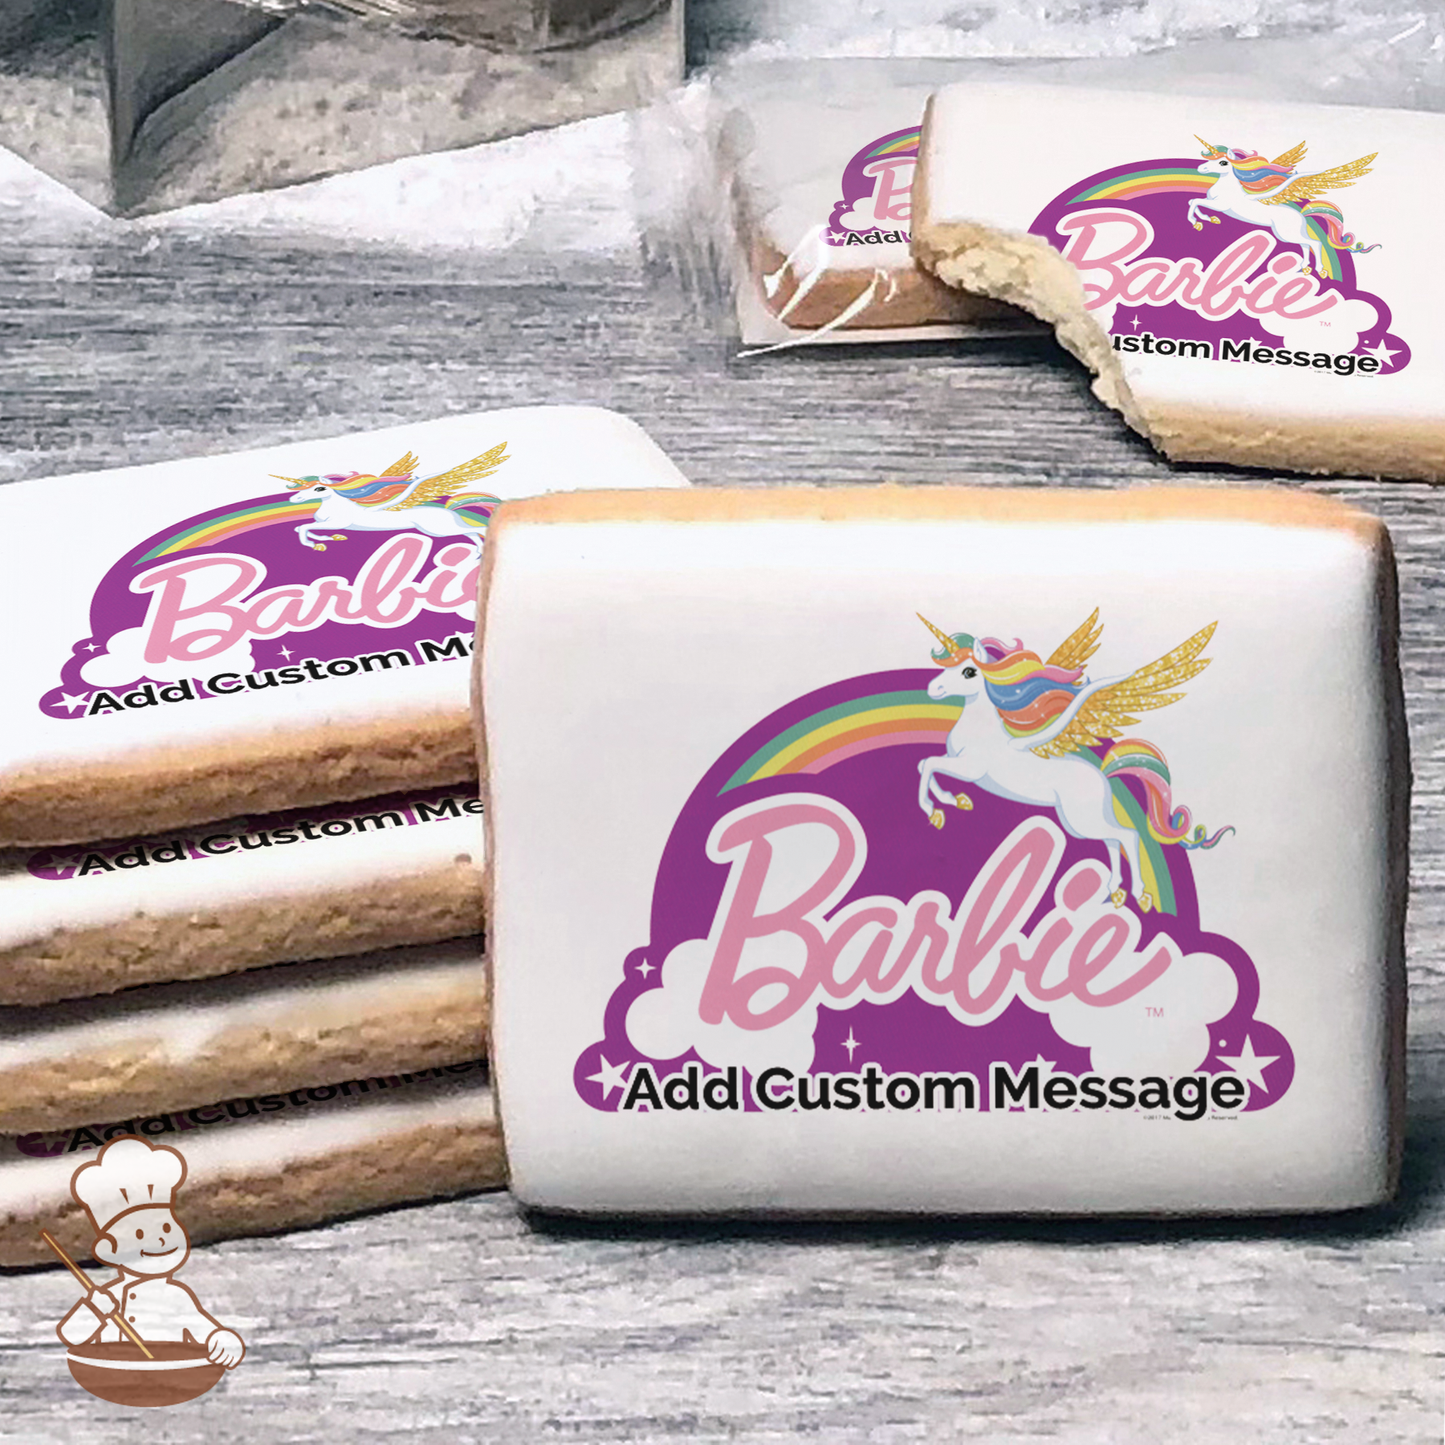 Barbie Dreamtopia Just Believe Custom Message Cookies (Rectangle)